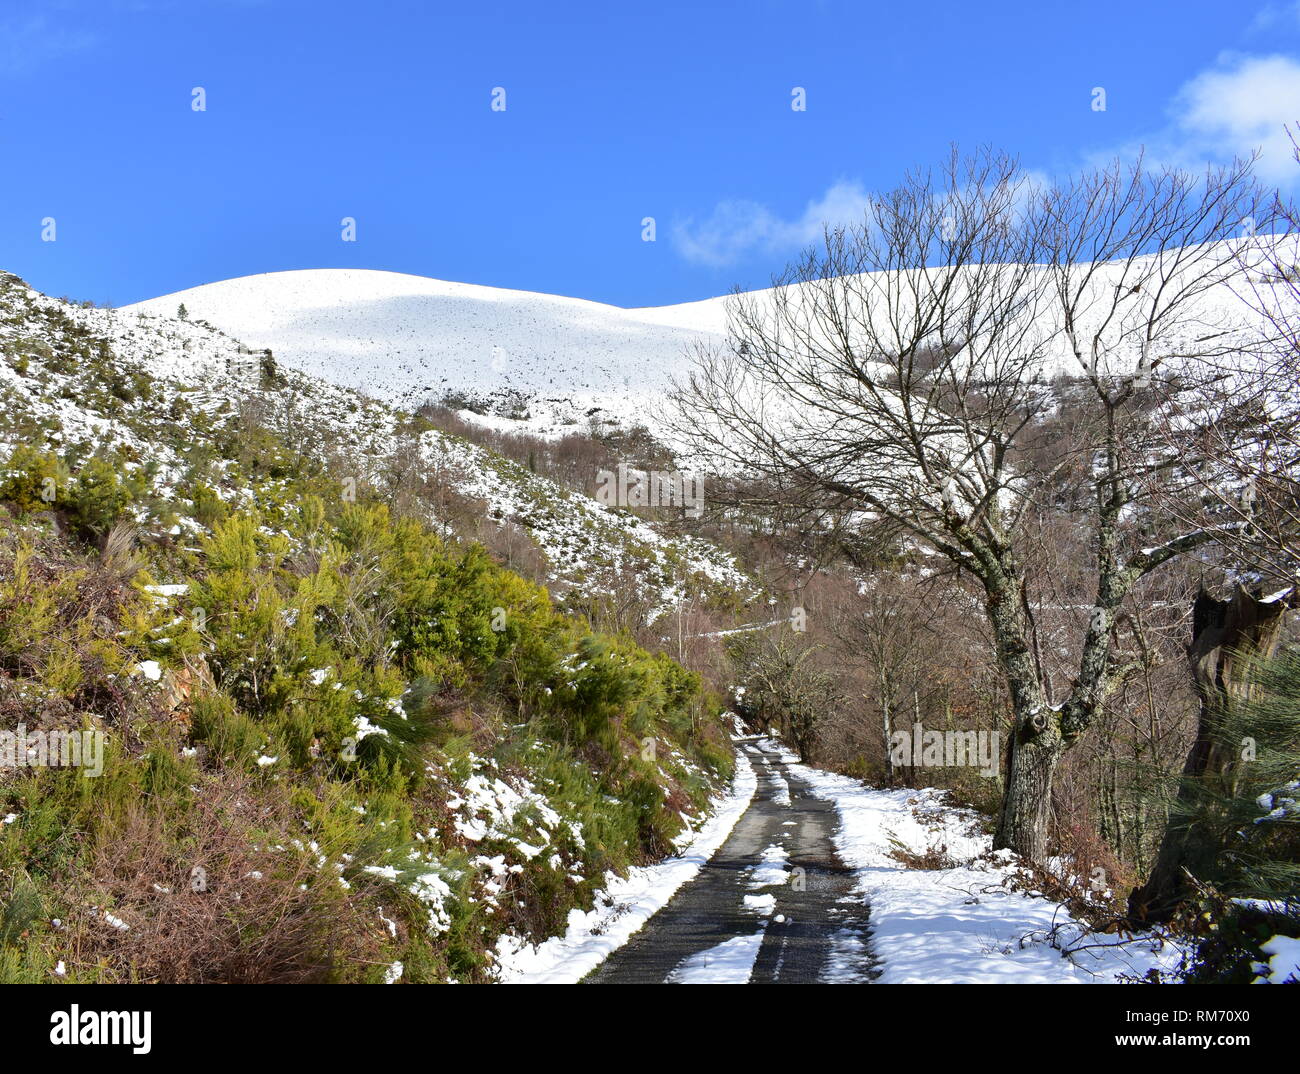 Winterlandschaft mit Straße, schneebedeckten Bergen, Bäumen und Vegetation. Blauer Himmel, sonnigen Tag. Ancares Region, Provinz Lugo, Galizien, Spanien. Stockfoto